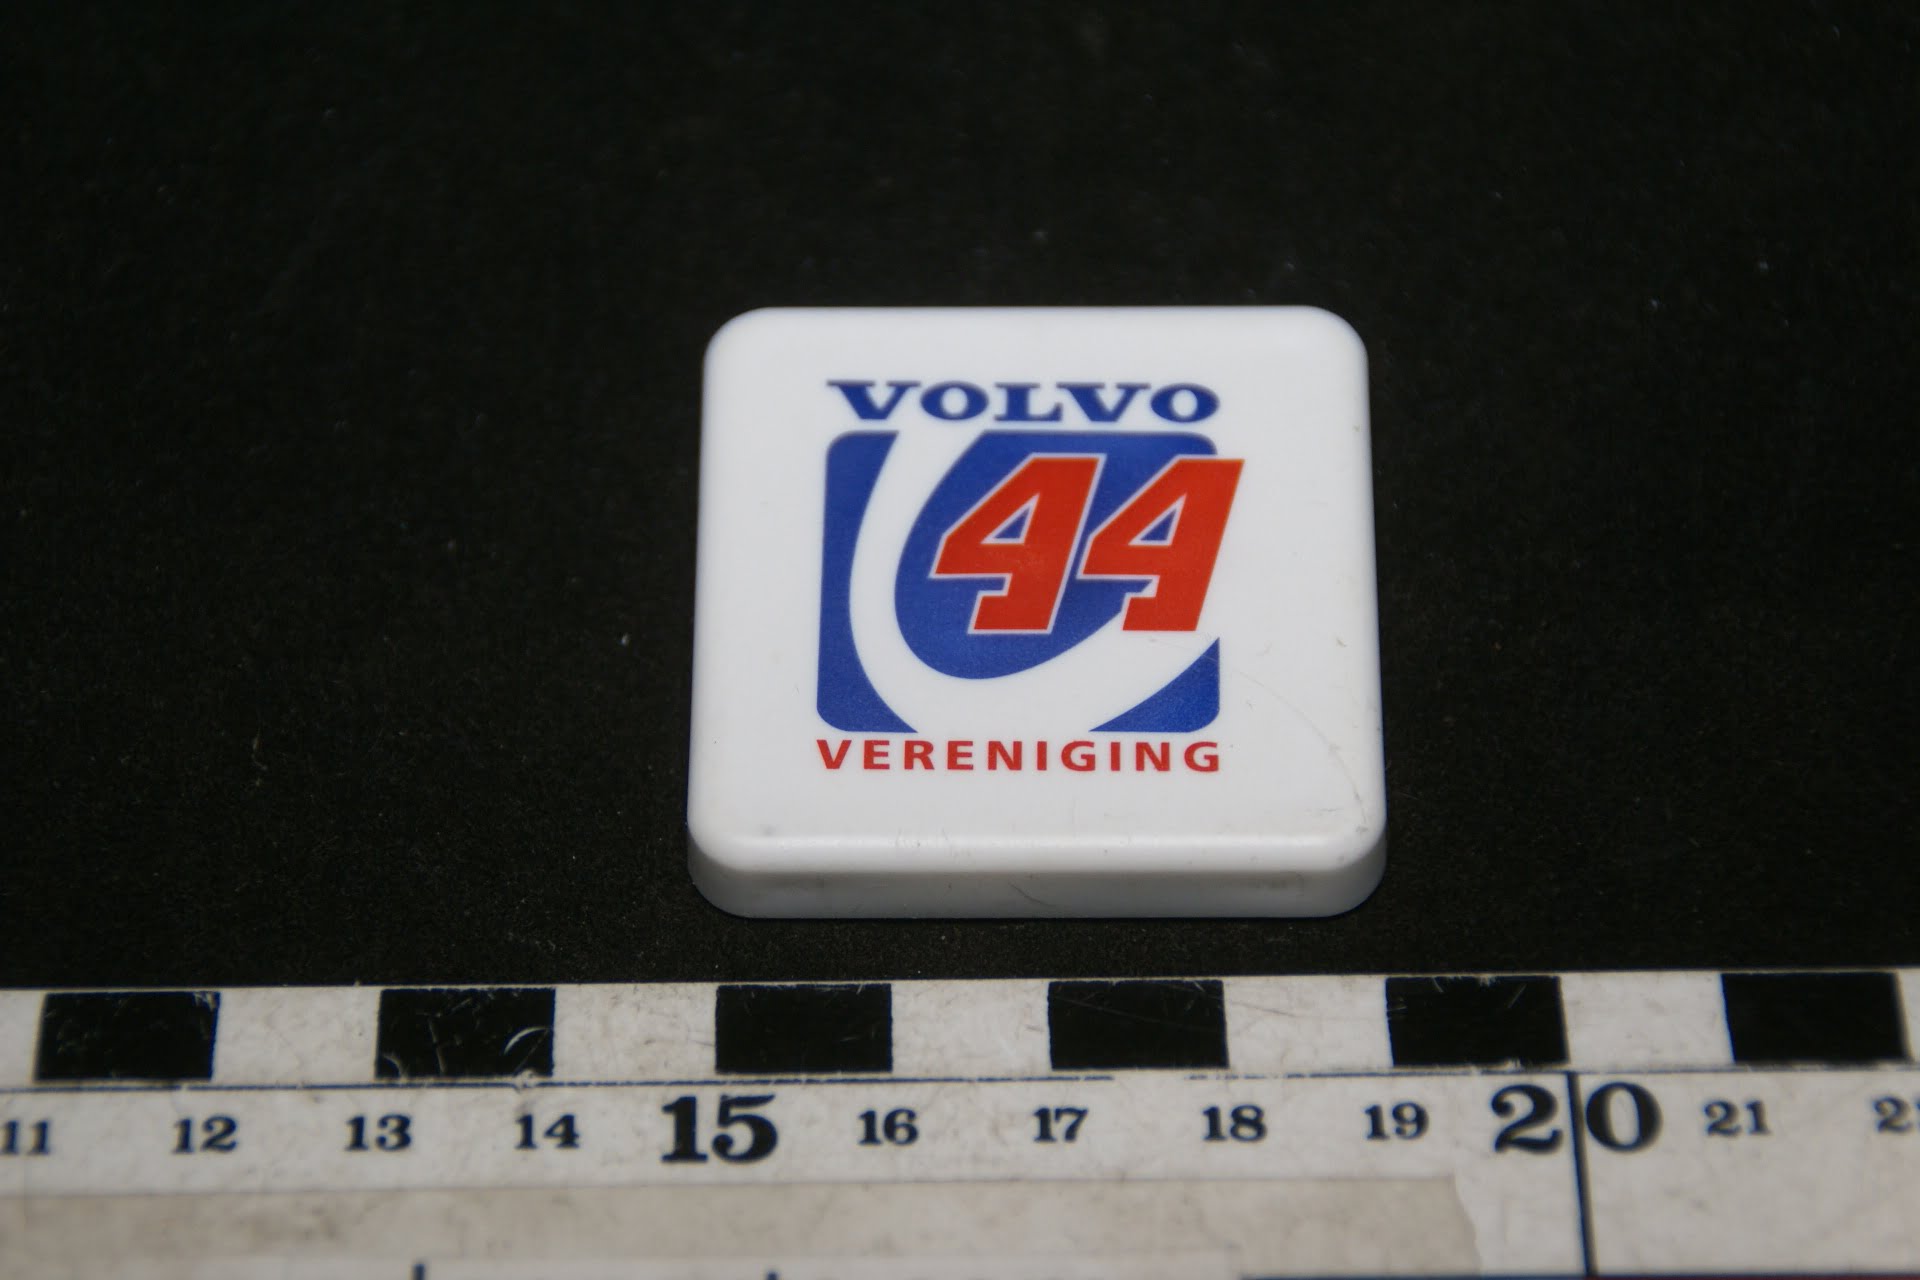 DSC02012 90er jaren origineel magneet Volvo V44 vereniging-be637282